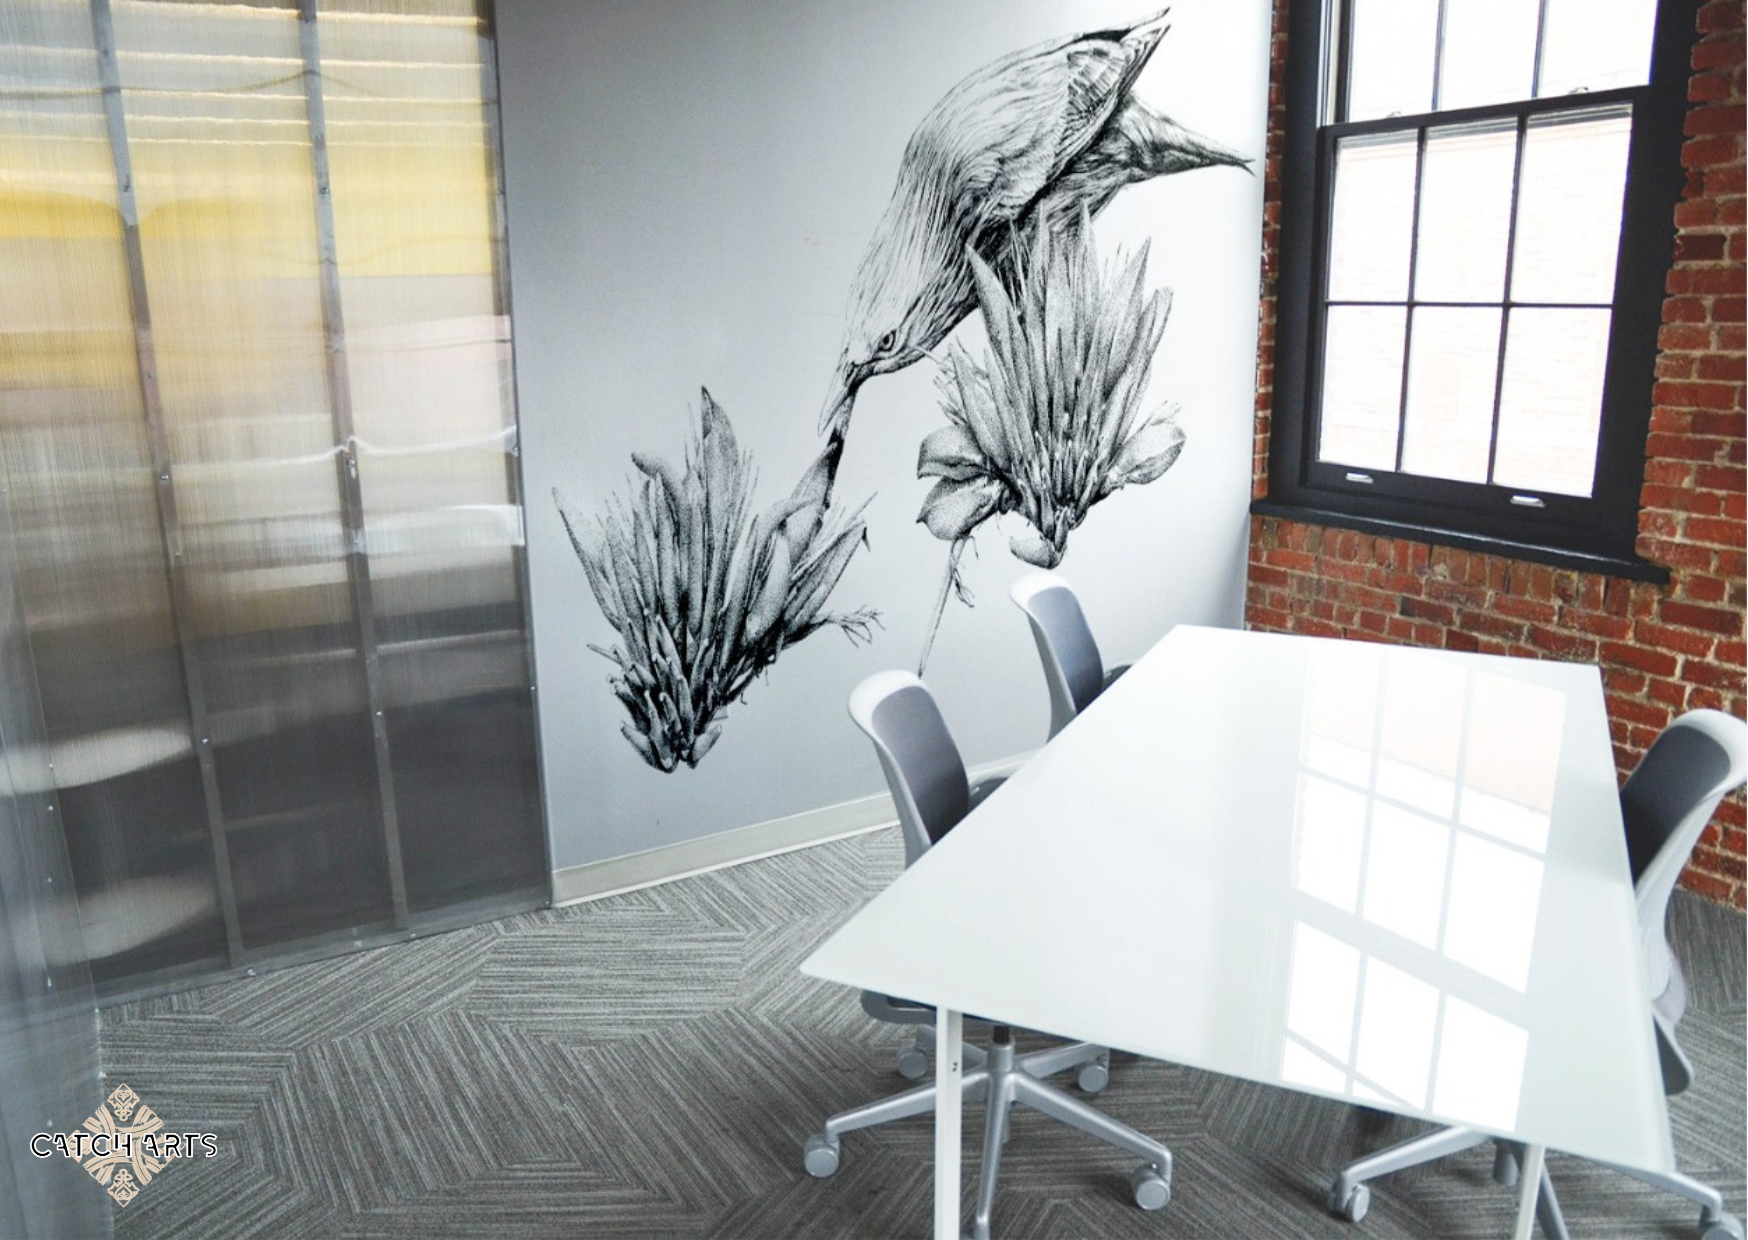 votre salle de réunion, un espace ou les idées peuvent fleurir